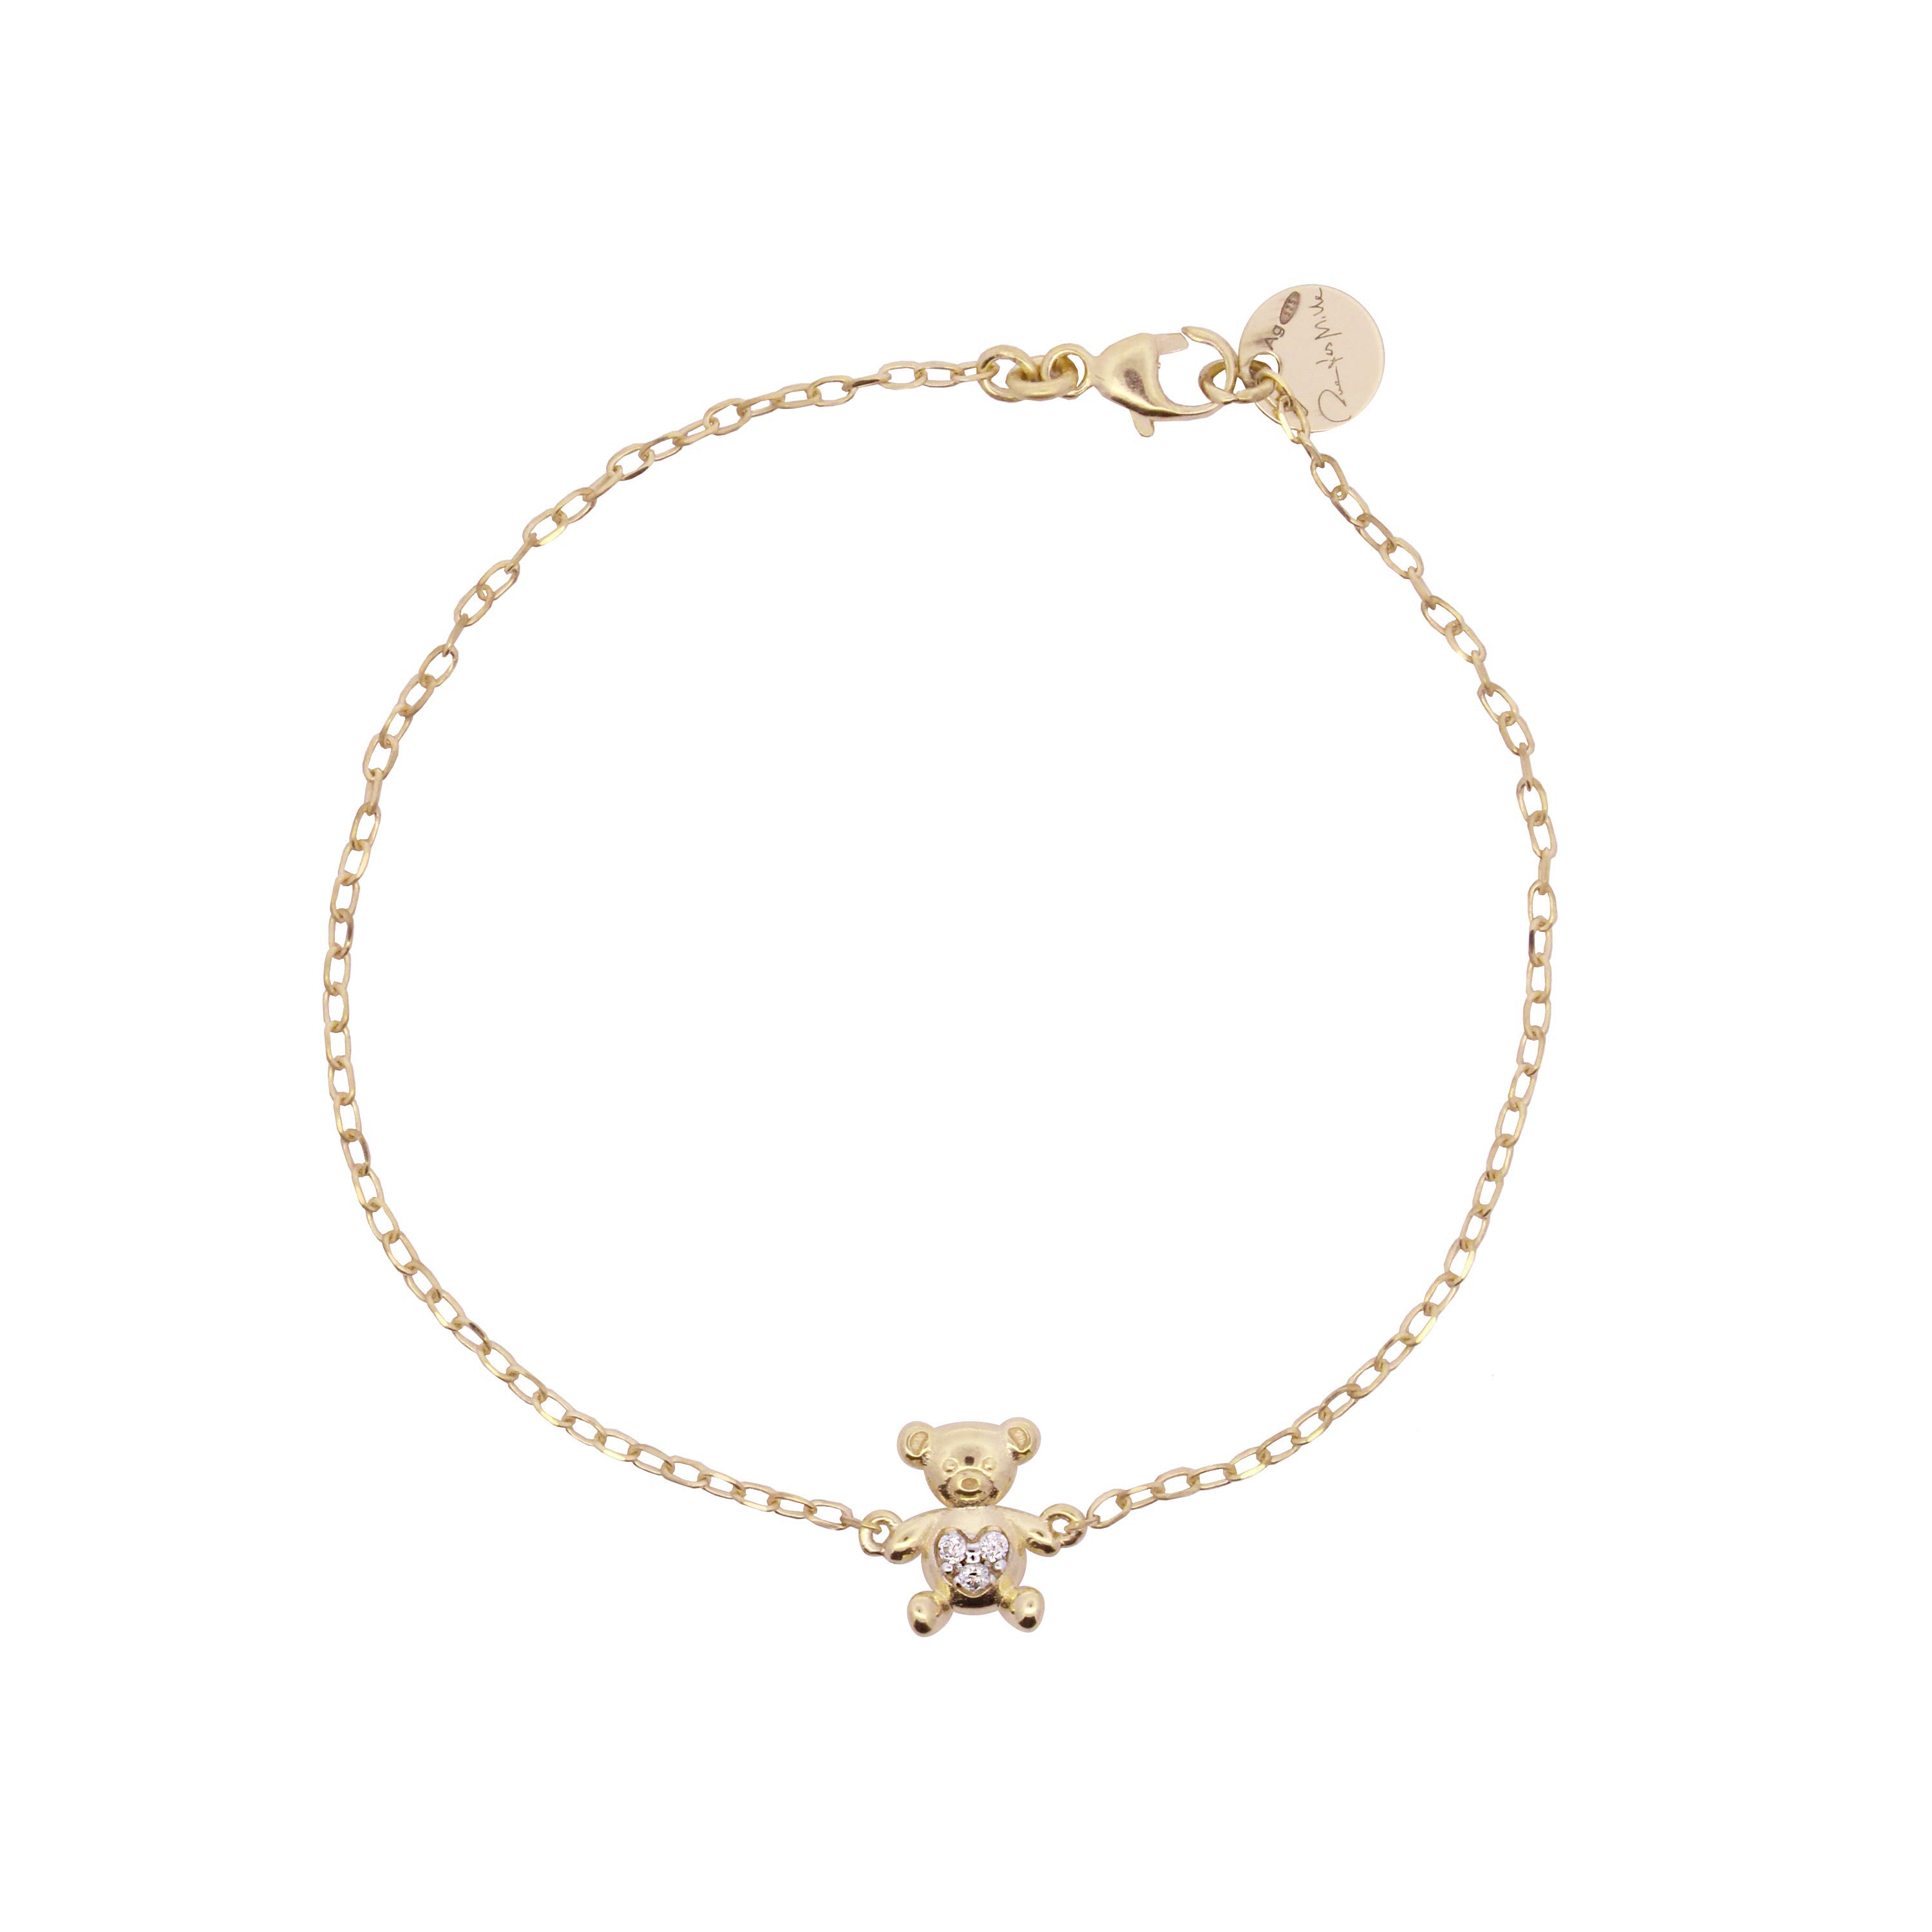 Bracelets - Teddy bear chain bracelet - Teddy Fancy - 2 | Rue des Mille